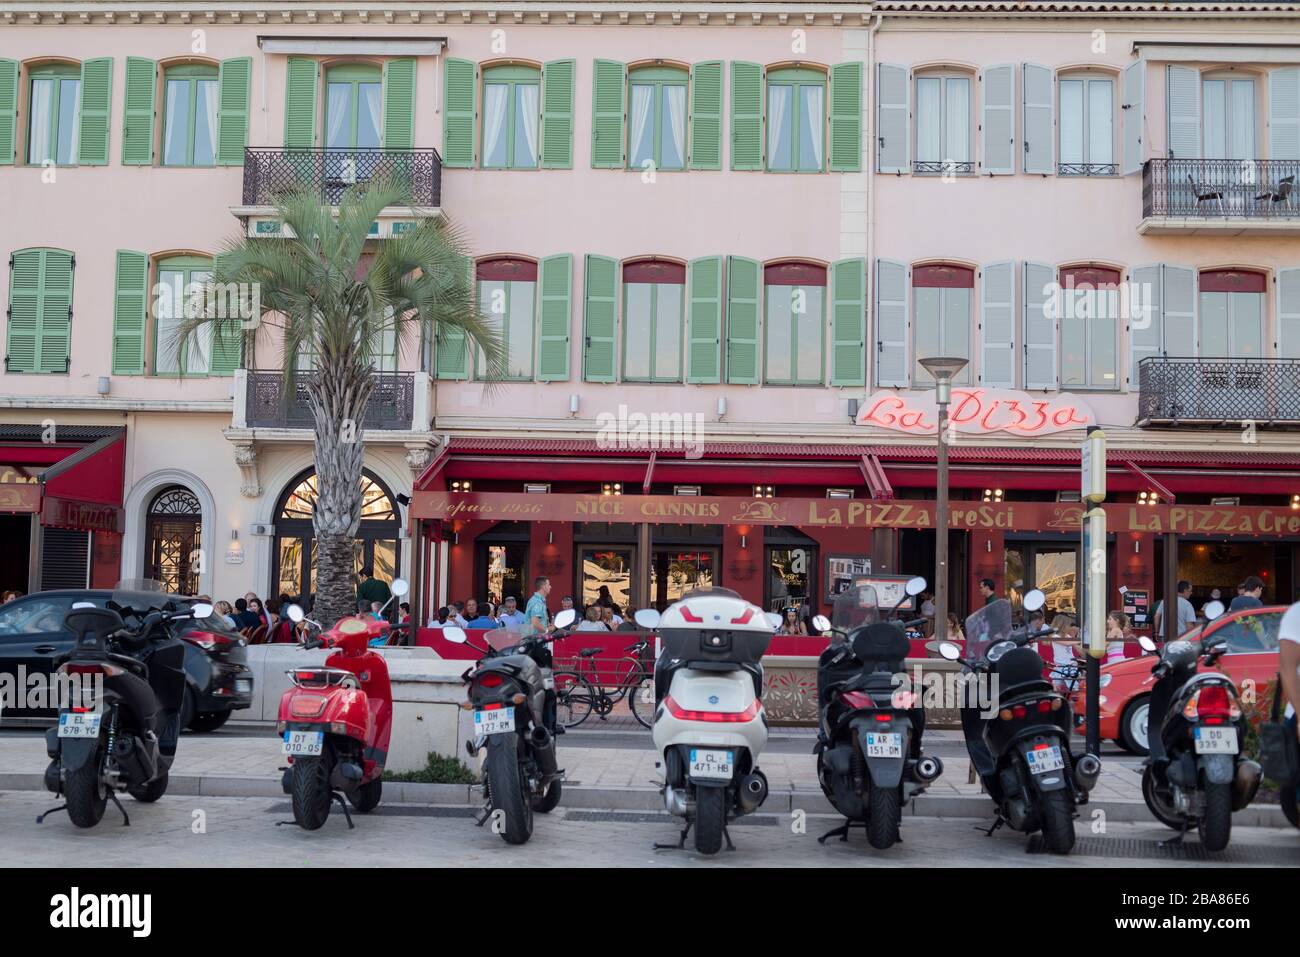 Un groupe de motos stationnées dans la rue Cannes Promenade. Concept moto Travel. Vue sur la rue de Cannes. Banque D'Images